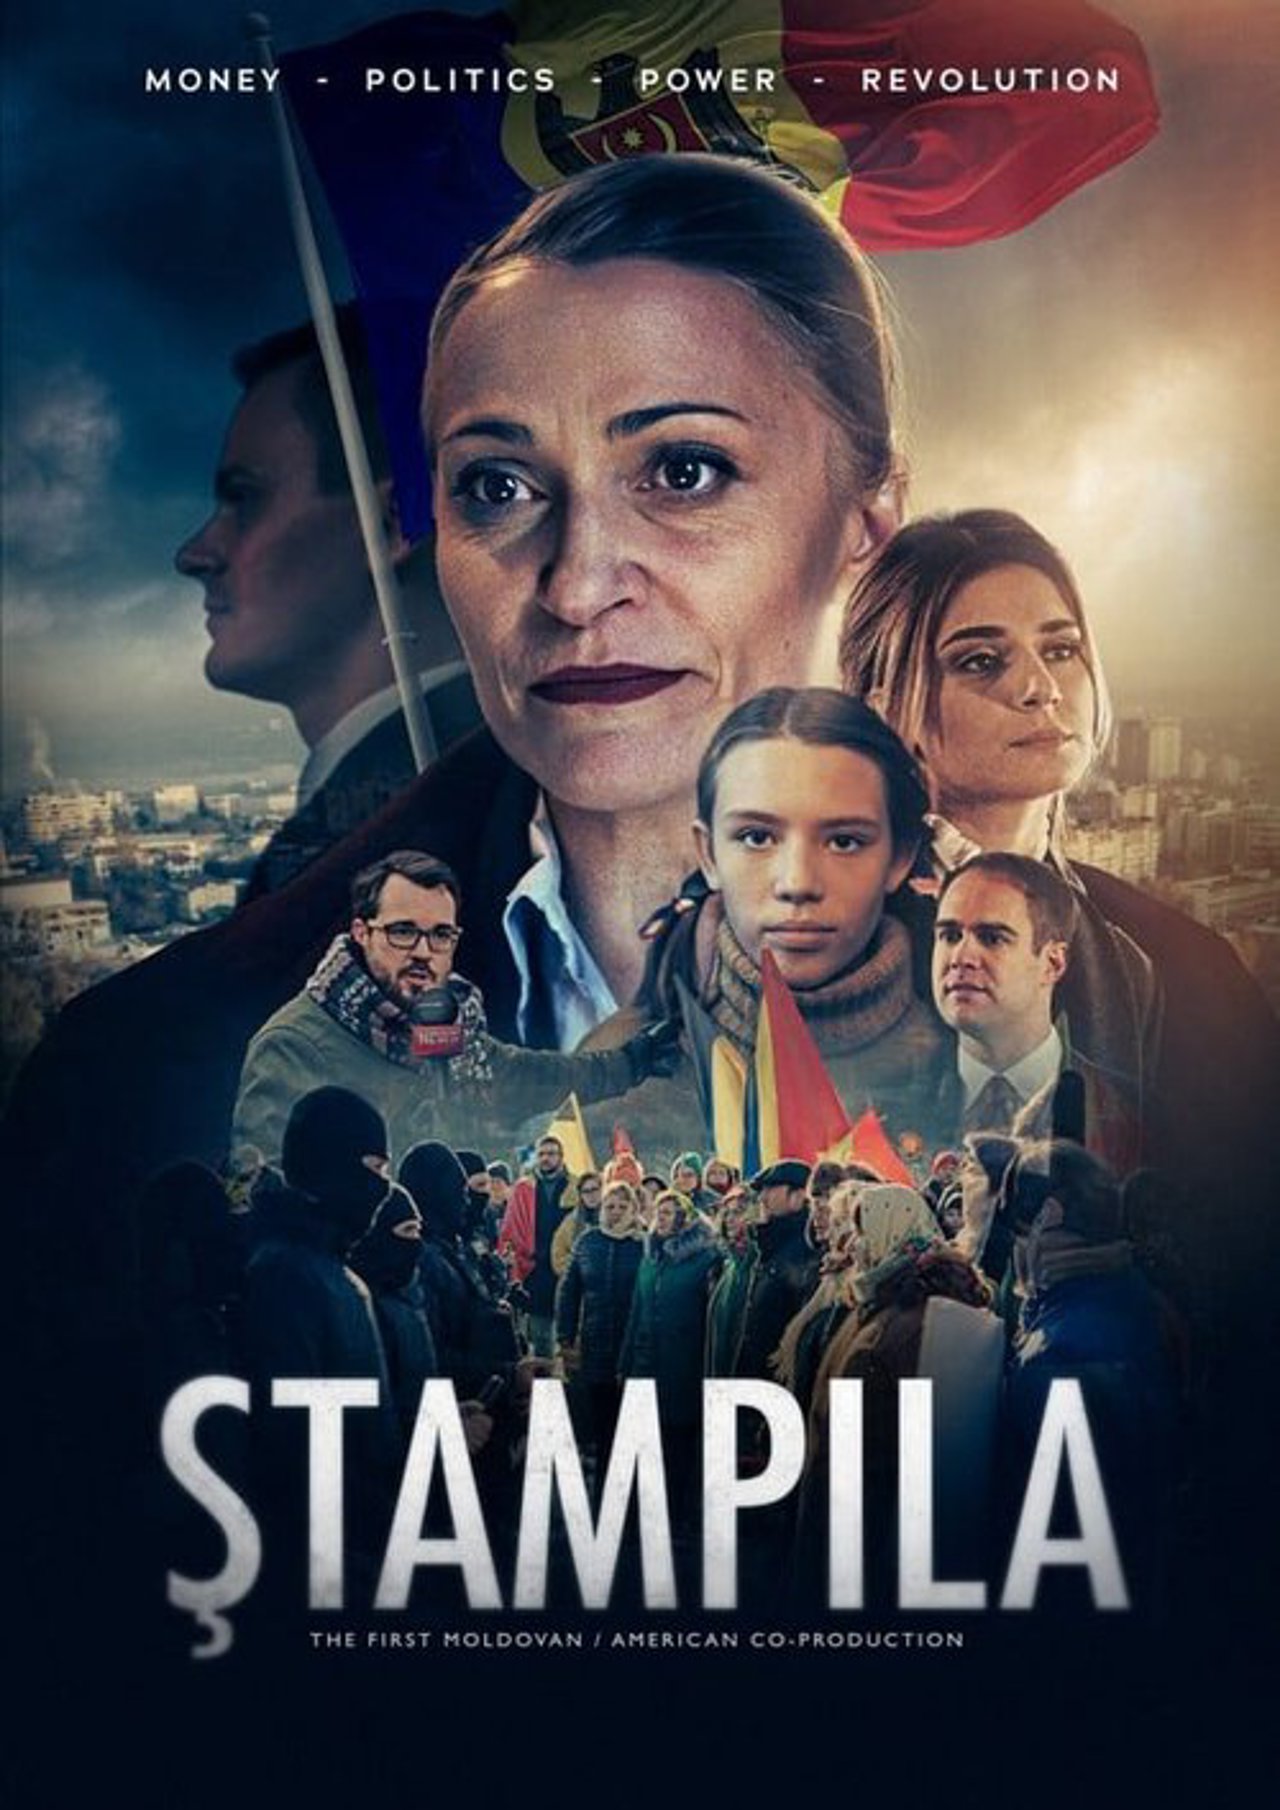 Premiera comediei dramatice „Ștampila”, o primă producție moldo-americană, a avut loc la Chișinău